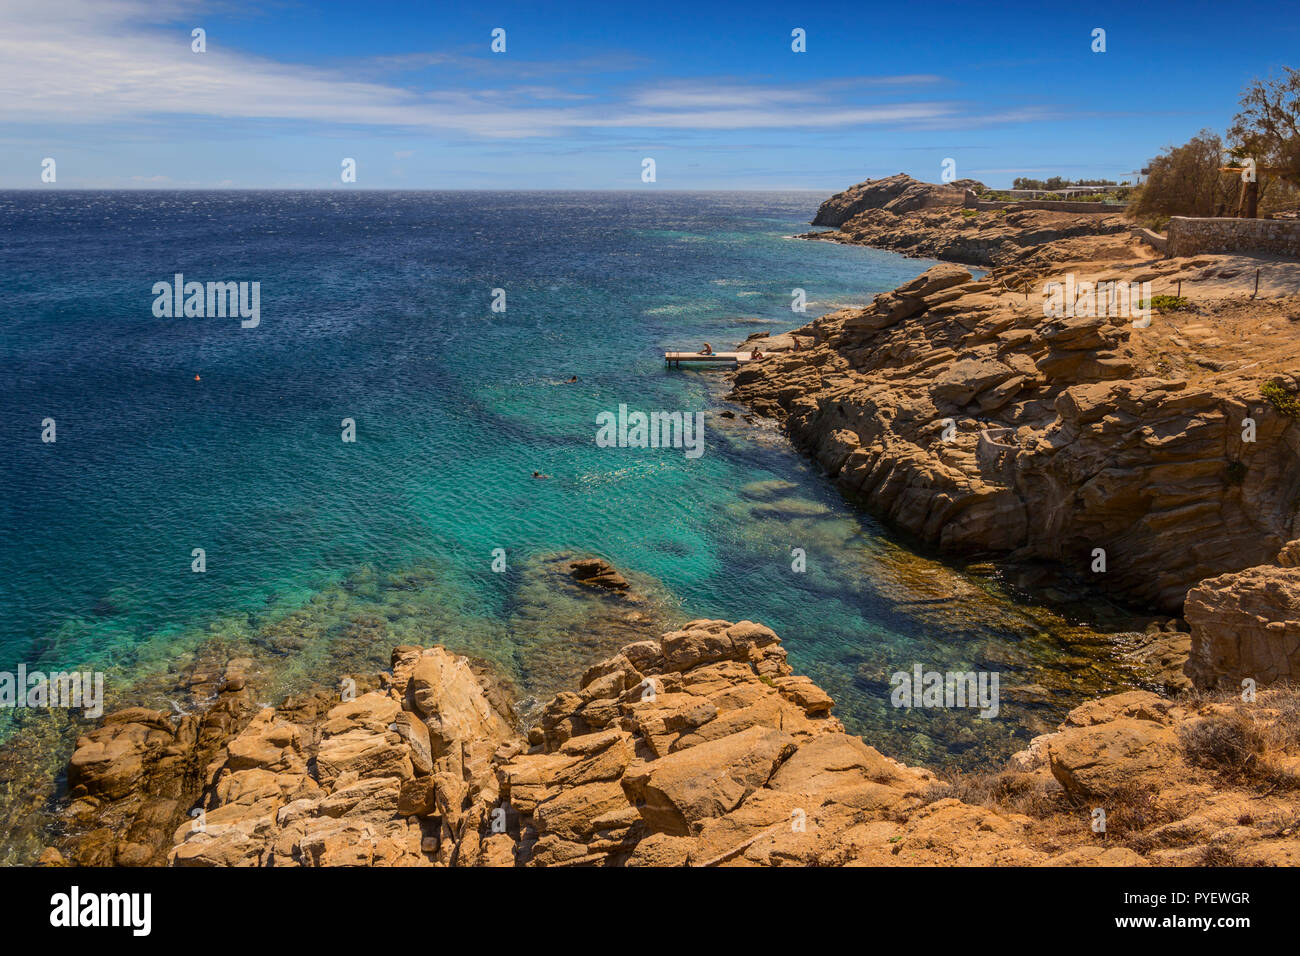 Estate: isola di Mykonos, Grecia. Lo splendido paesaggio della costa rocciosa: acque azzurre del Mar Egeo, Cliff, pietre e sassi. Soleggiato con cielo blu e Foto Stock